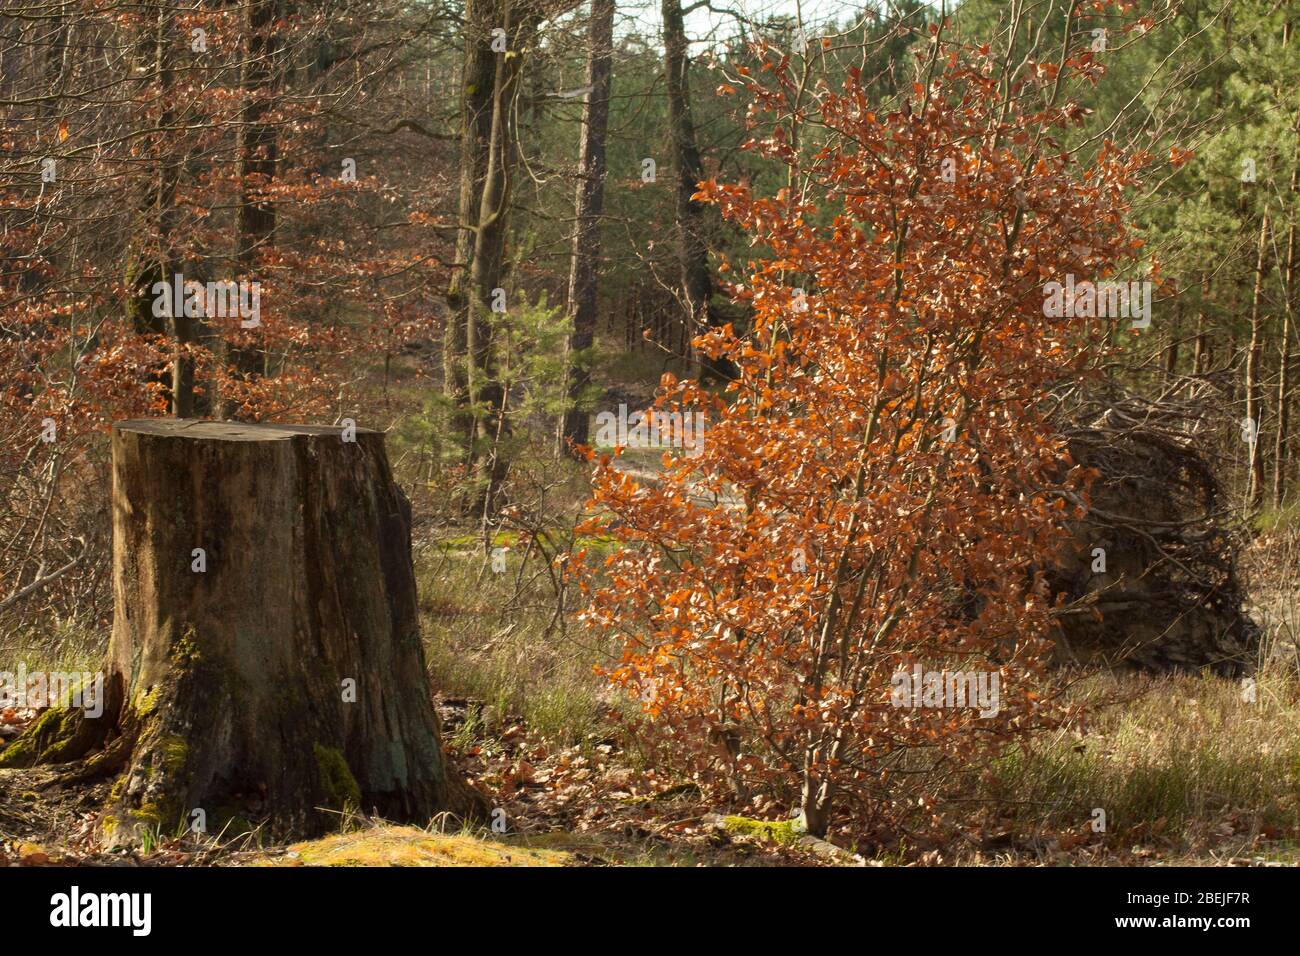 Ein schönes Bild eines geschnittenen Stammes mit einem jungen Baum, der beides wächst. Stockfoto